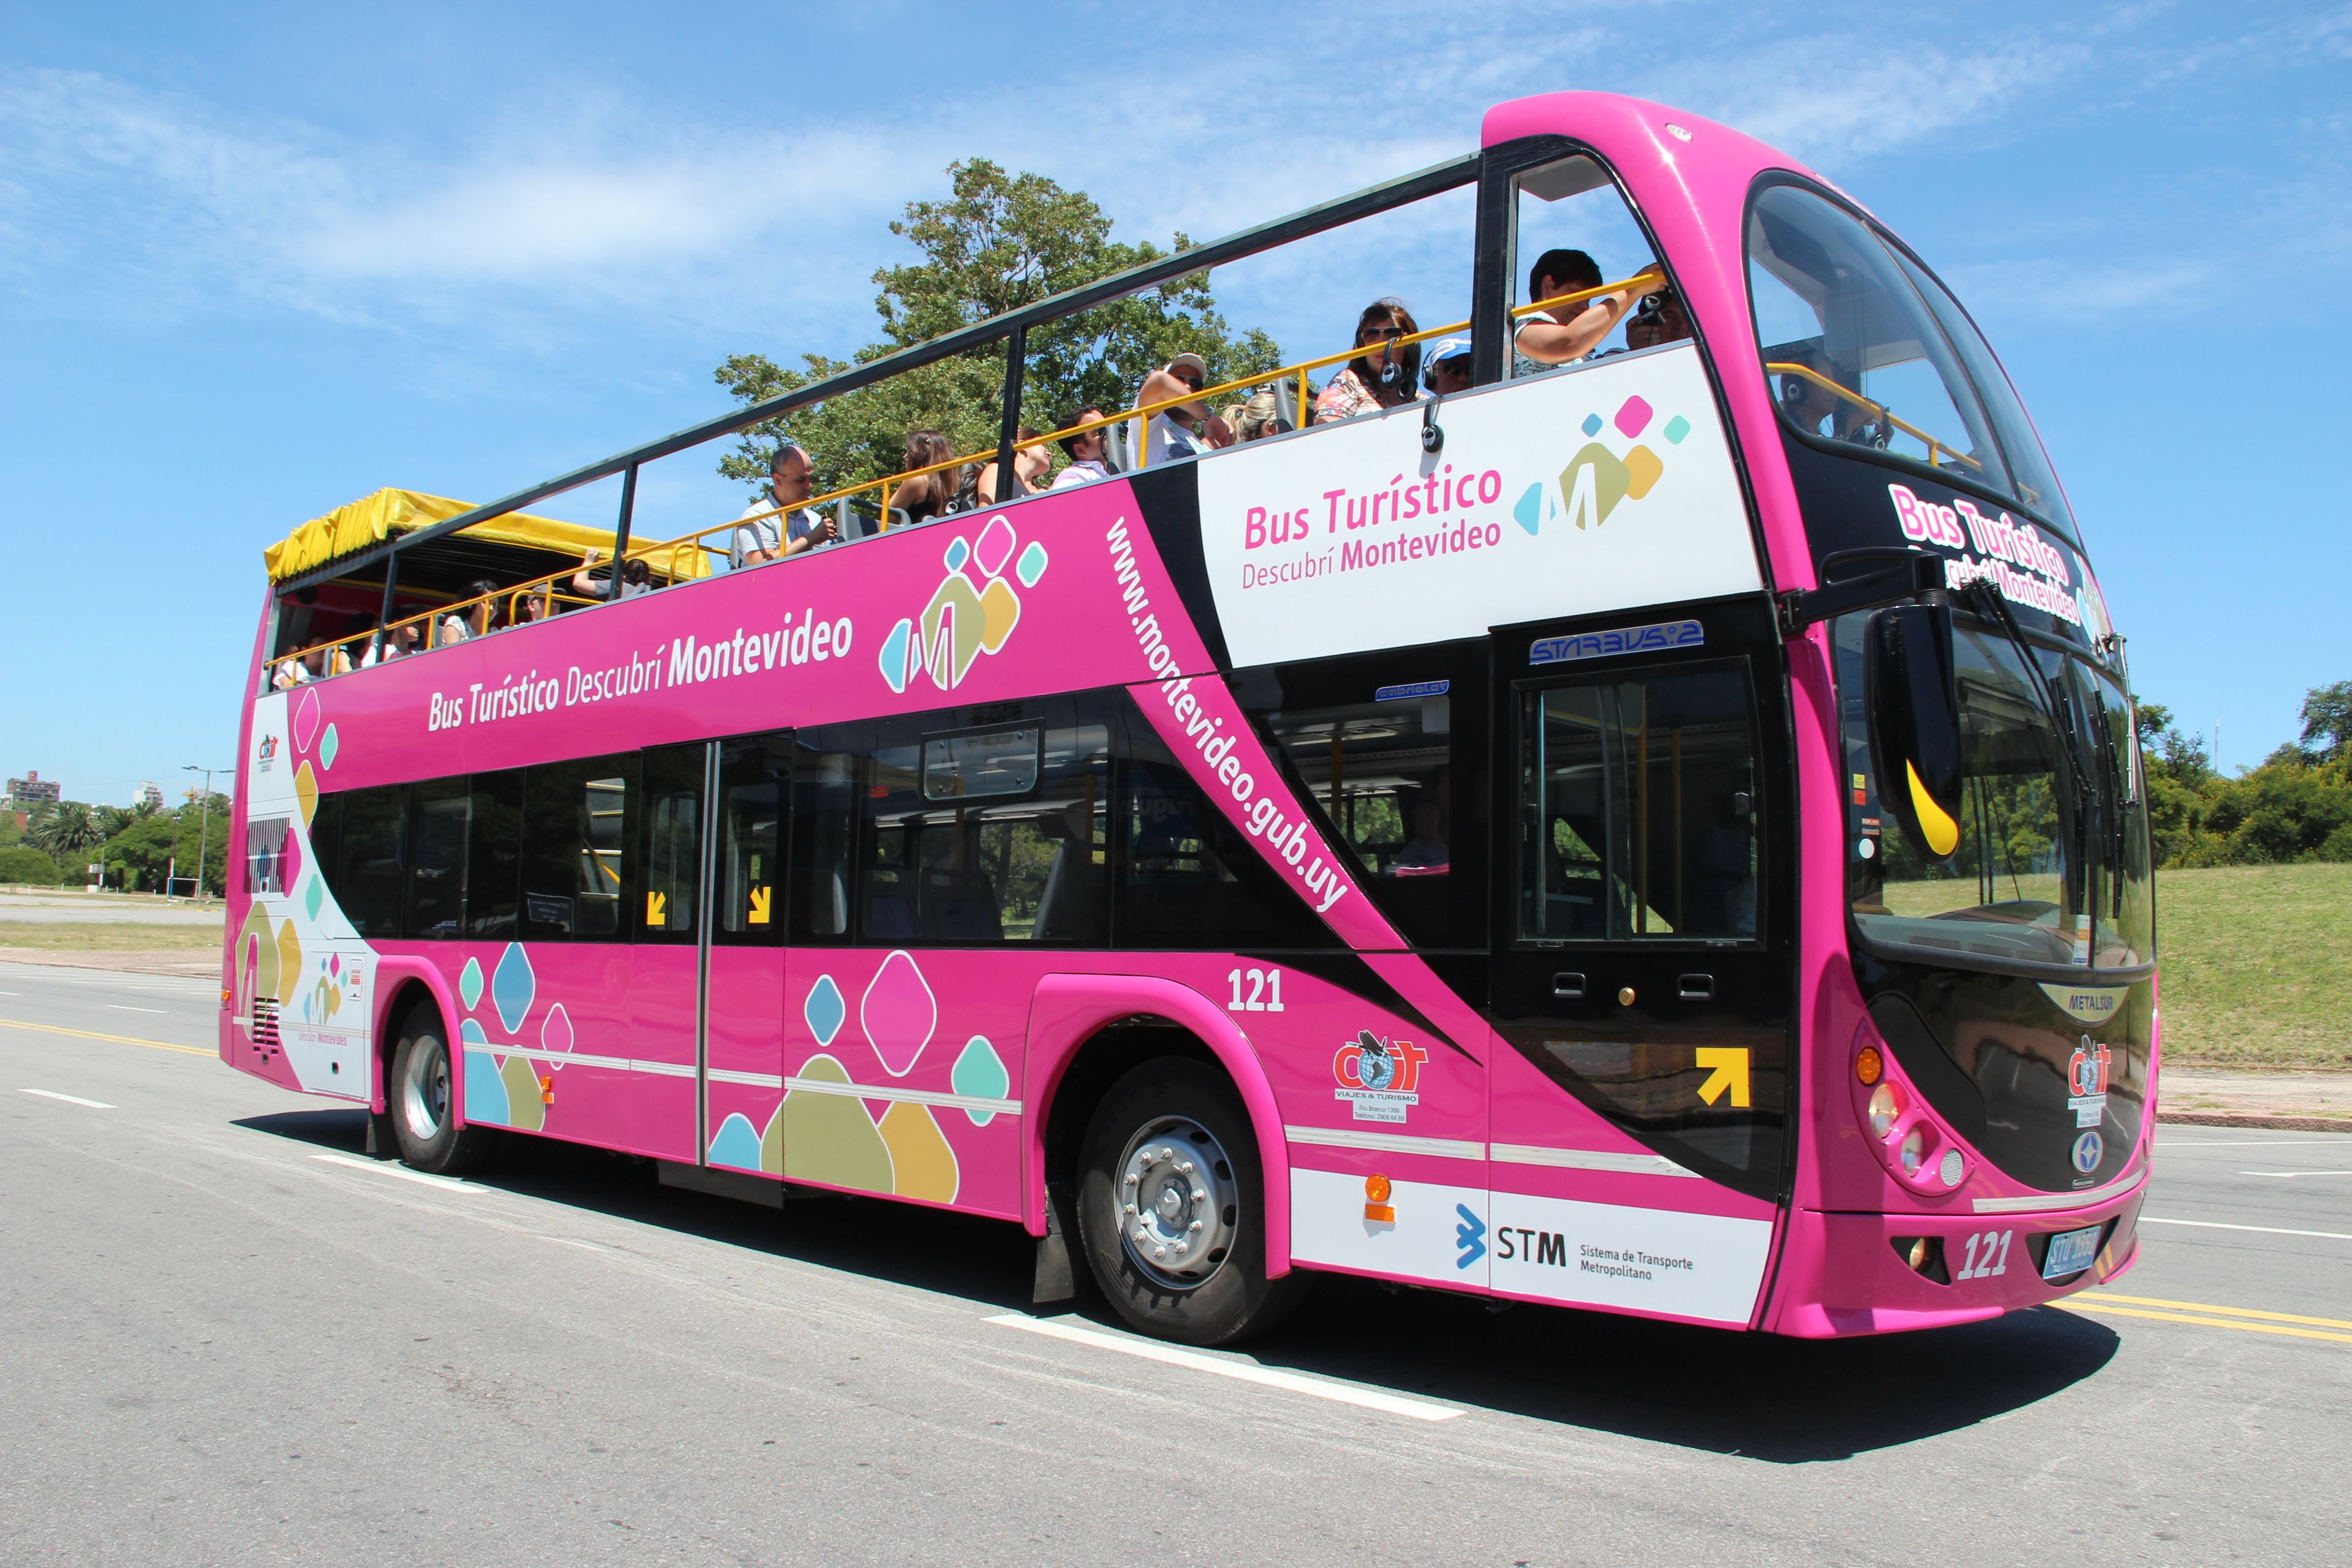 Tourist Bus. Сравнение Beulas BS (Bus turistico) и экскурсионный автобус hff6121gs-3. Гоу автобус